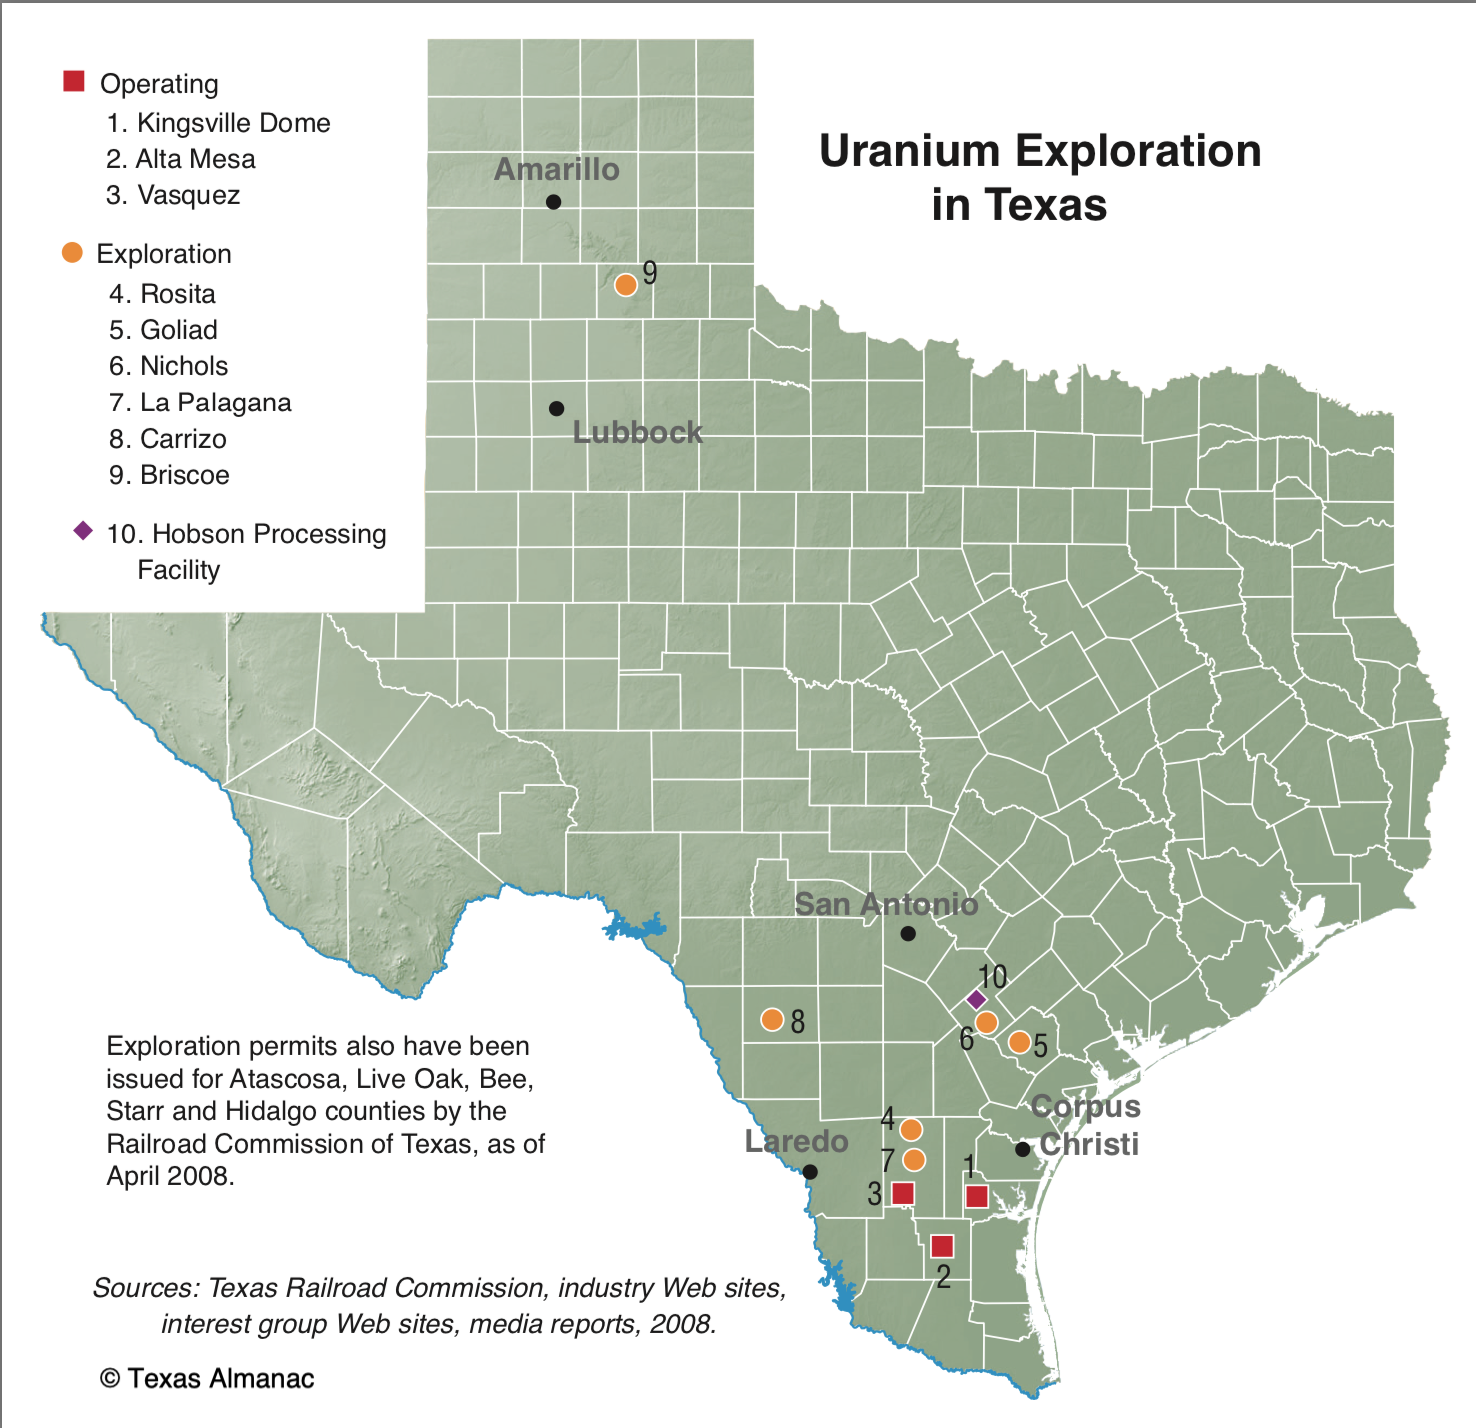 Uranium Exploration in Texas